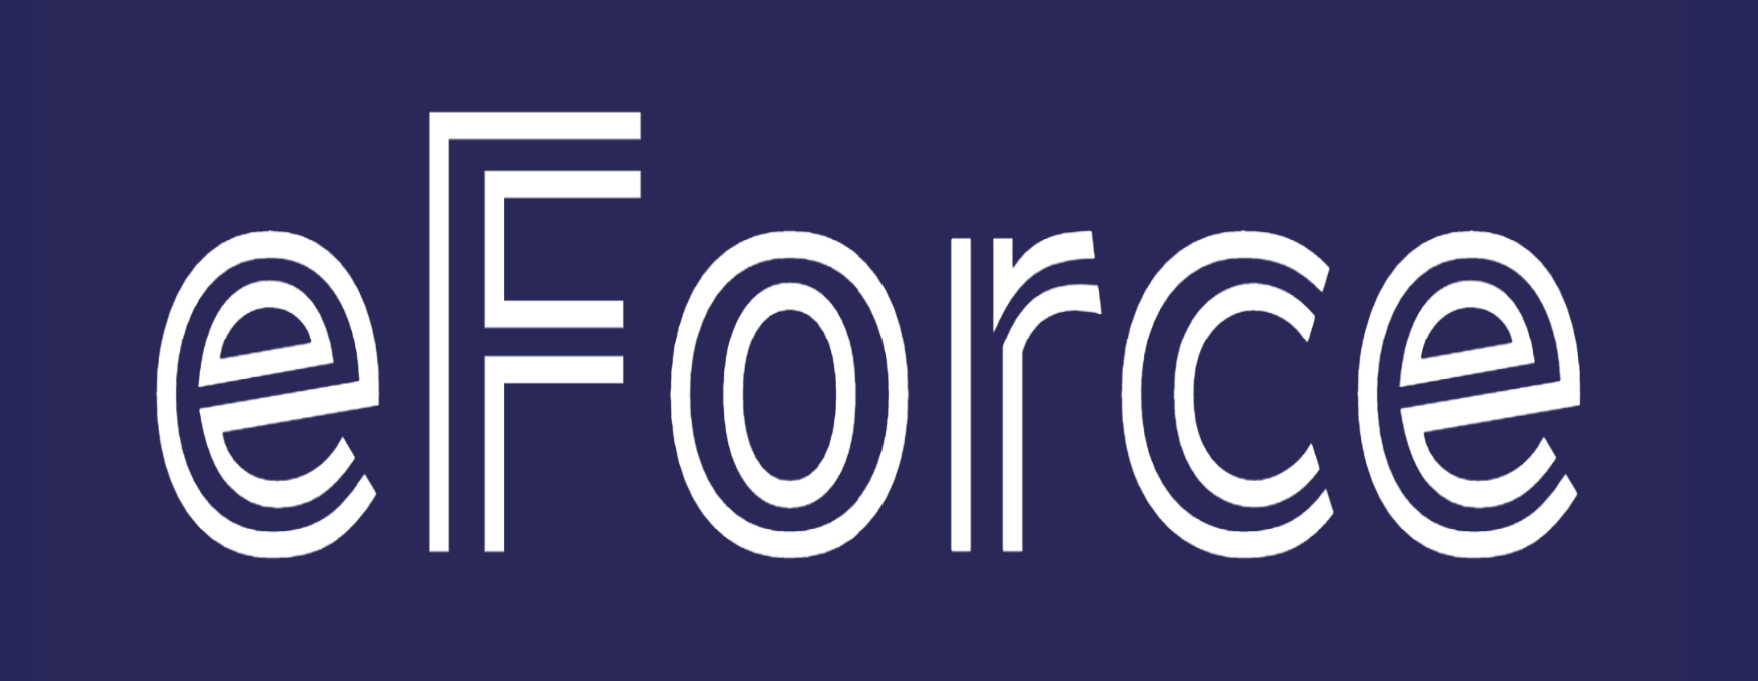 e-force logo